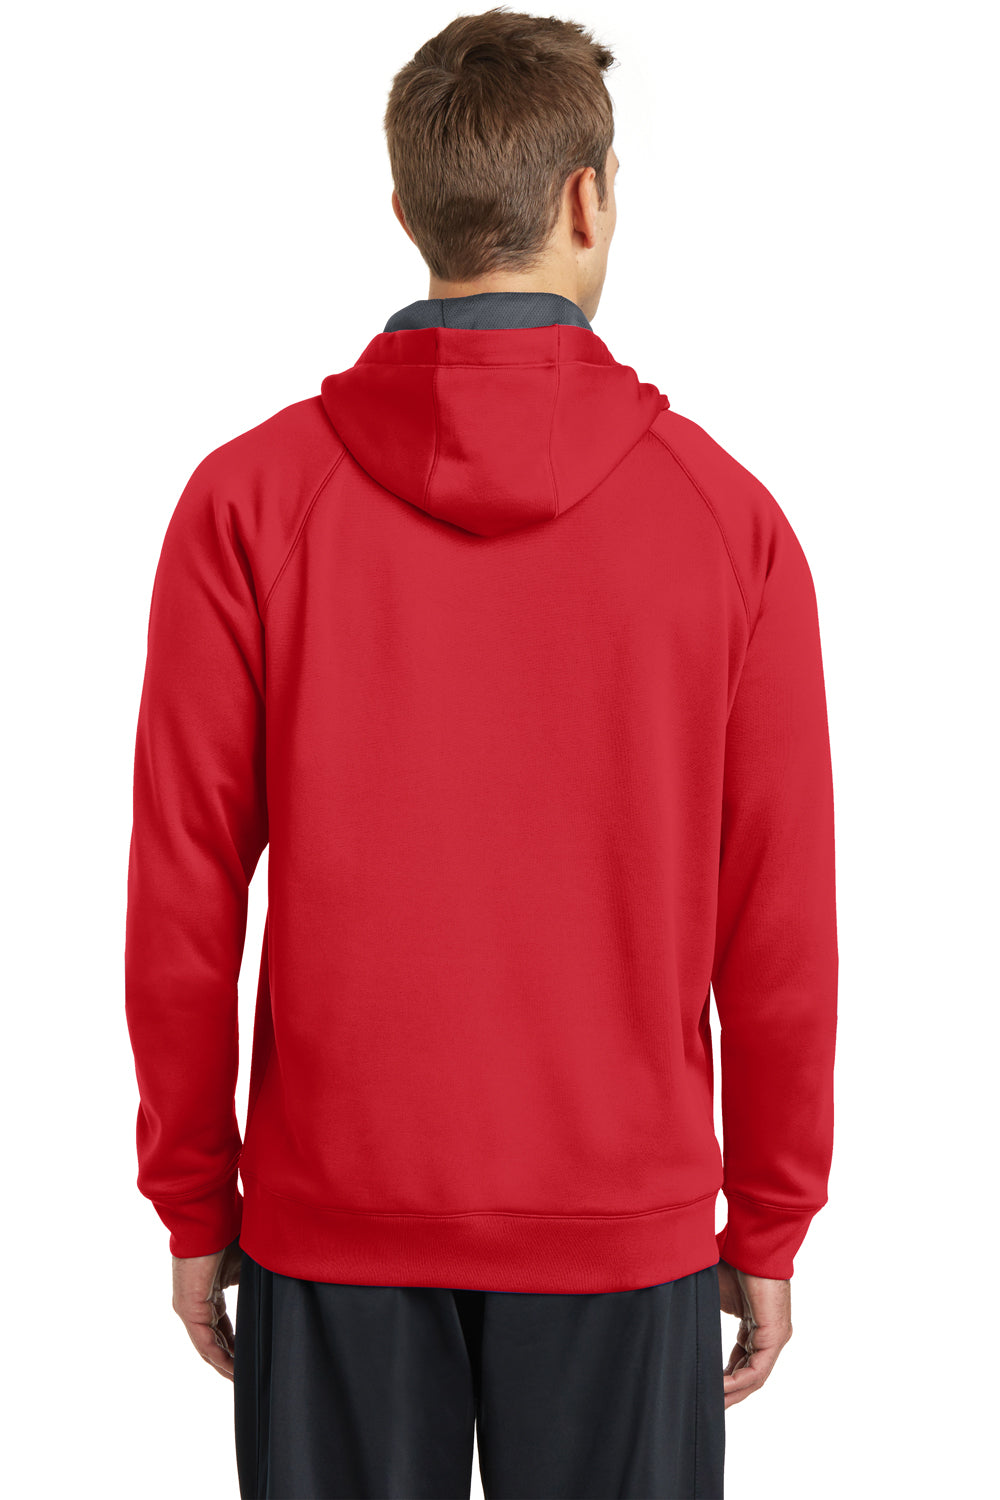 Sport-Tek ST250 Mens Tech Moisture Wicking Fleece Hooded Sweatshirt Hoodie Red Back